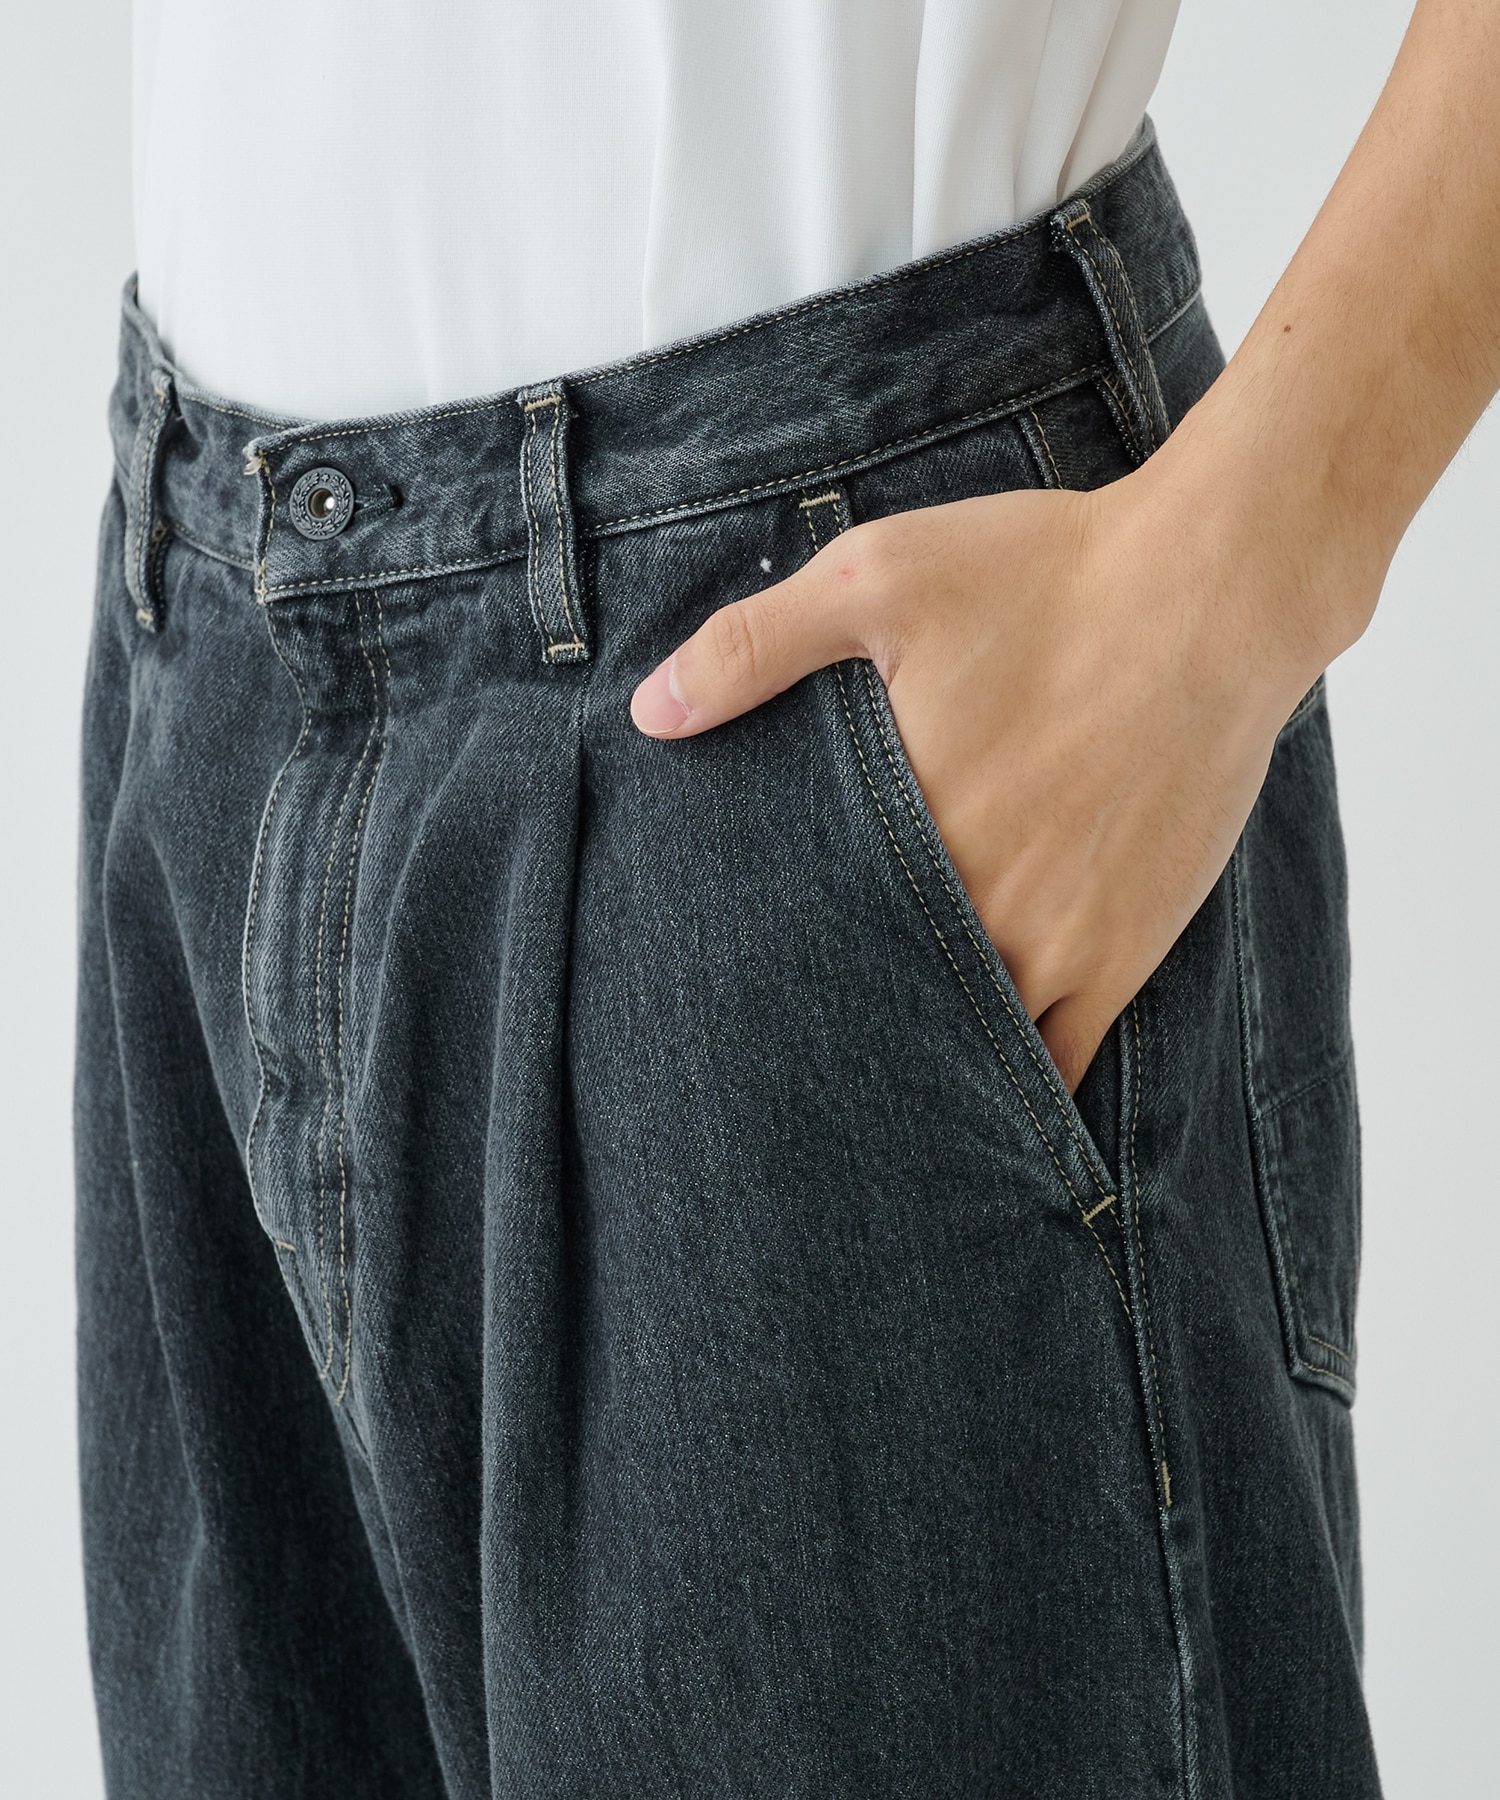 Selvedge wide jeans-Bio wash superNova.